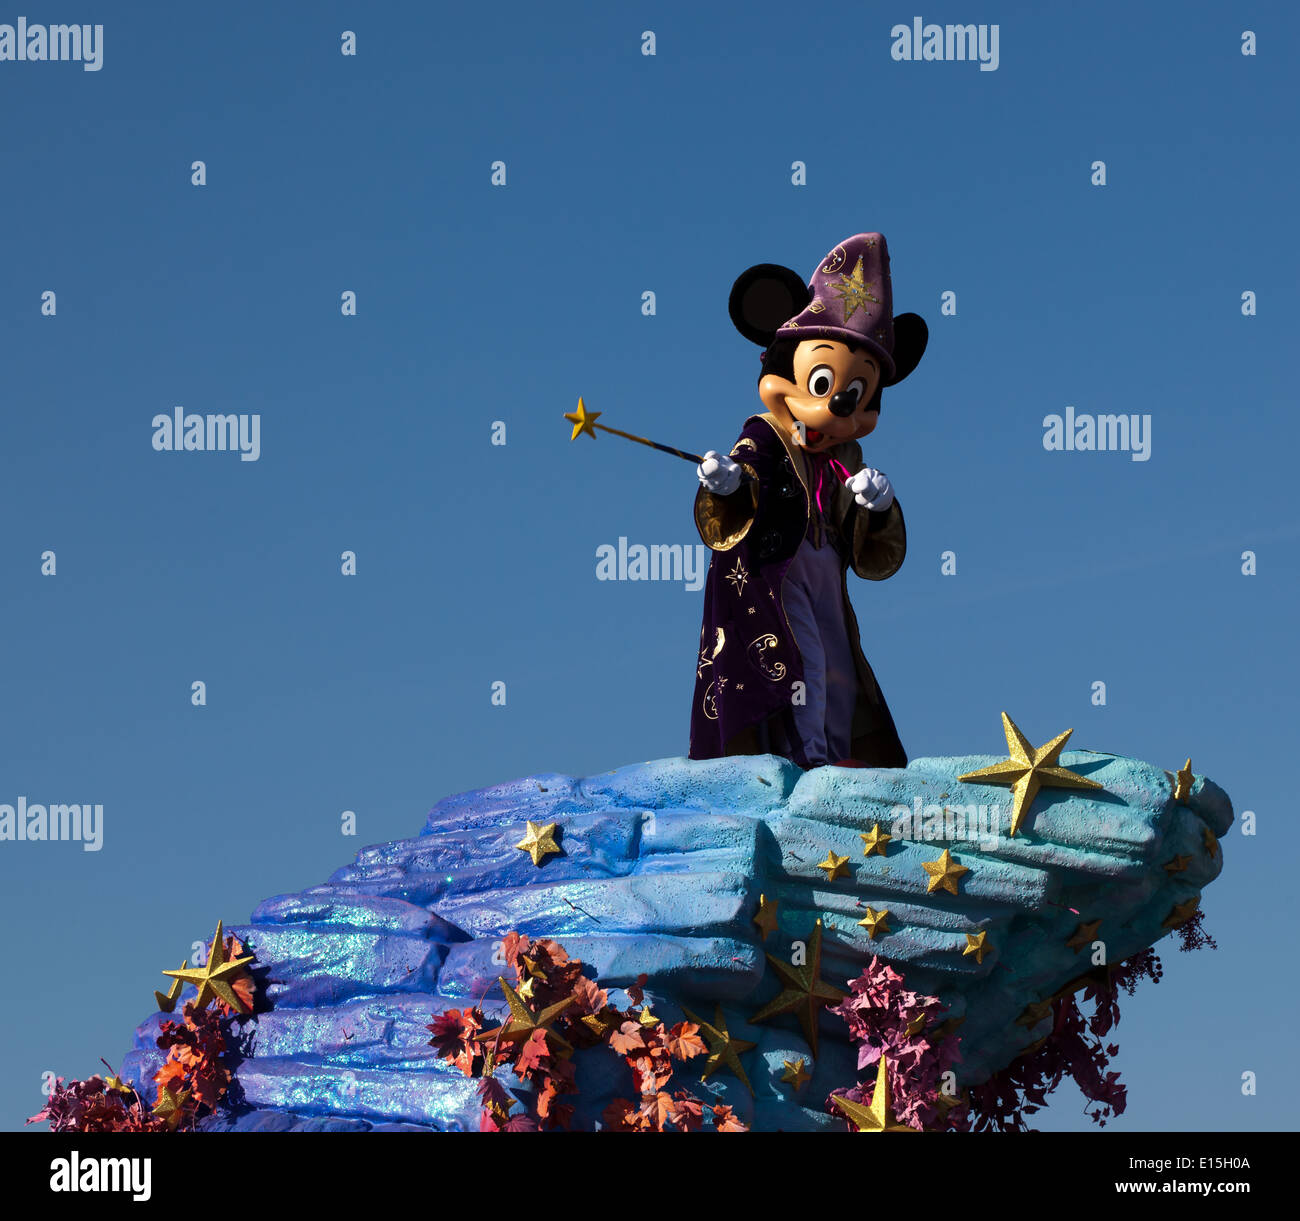 Una parata di Disney con Micky Mouse vestito come 'l'apprendista stregone' dal film di Disney Fantasia Foto Stock